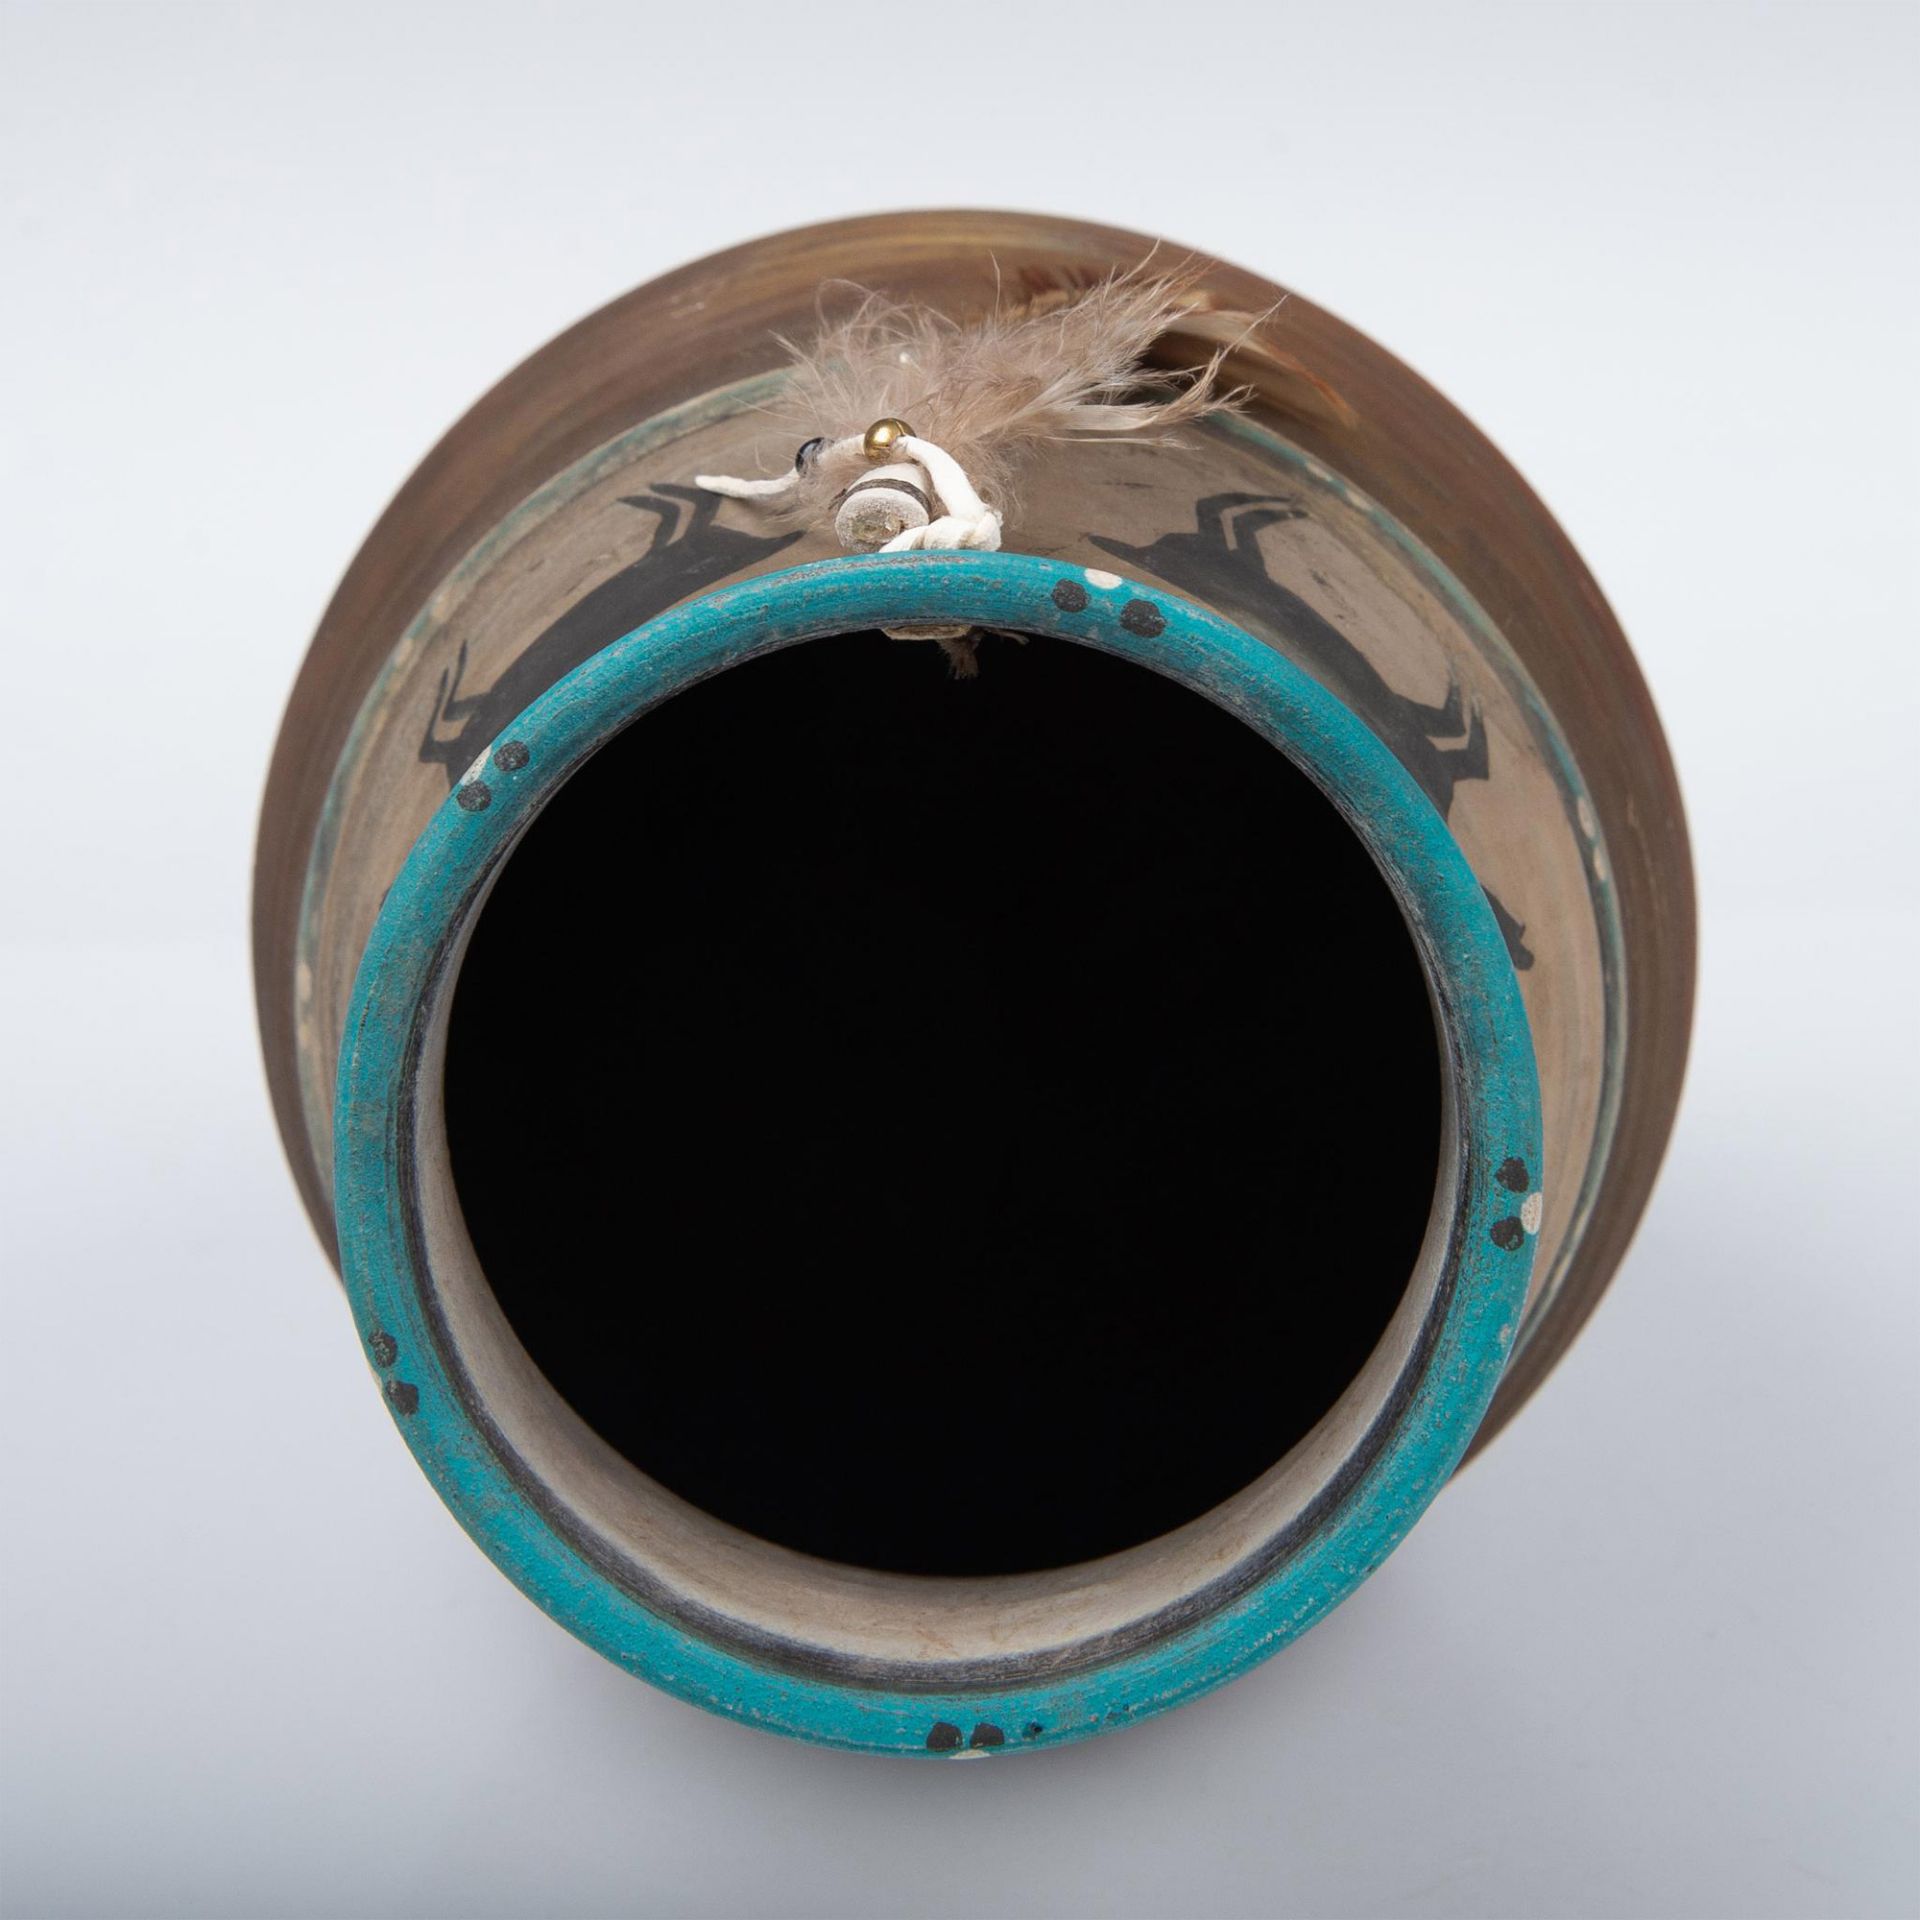 Native American Raku Fired Black Antelope Vase - Image 4 of 4